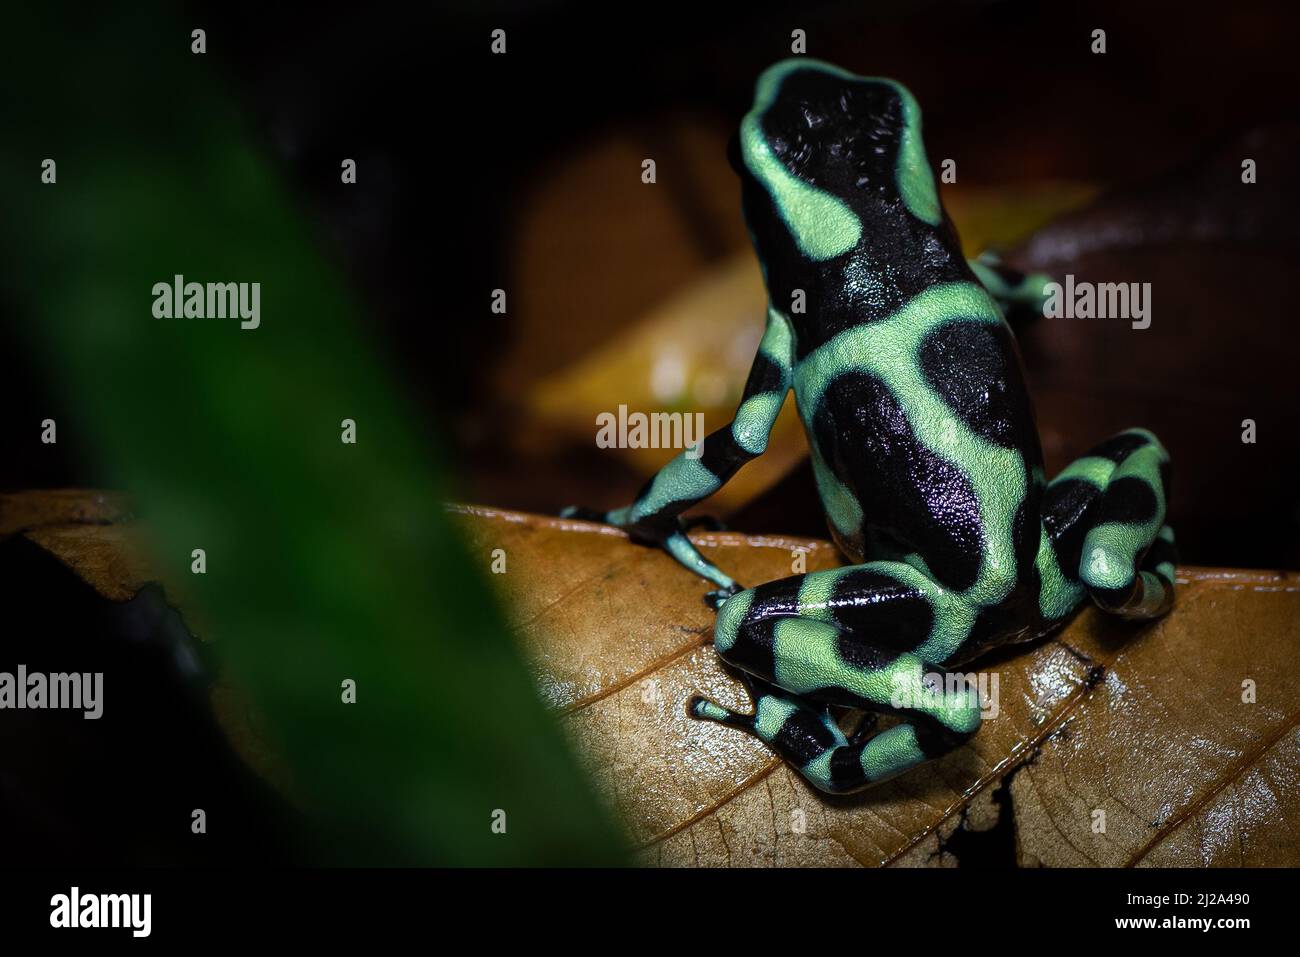 Motivo colori sul retro di una frana di freccette di veleno verde e nero (Dendrobates auratus) fotografata nel sottobosco di una foresta pluviale tropicale. Foto Stock